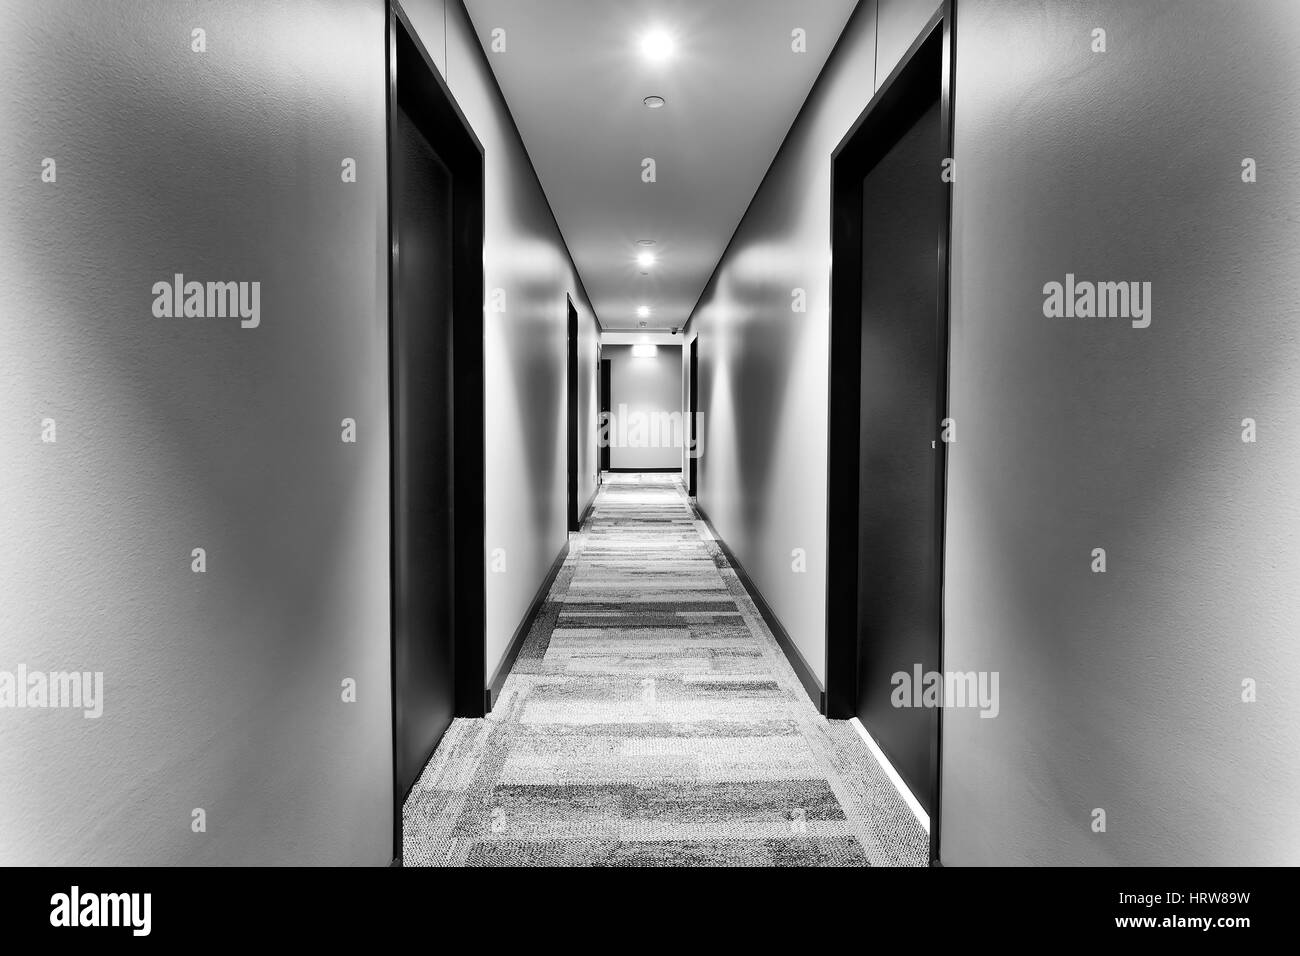 Symmetrische Korridor in modernes neues Hotel mit Türen an den Seiten und weiße Wände mit hellen Lichtern beleuchtet. Keine Gäste in Sicht. Stockfoto